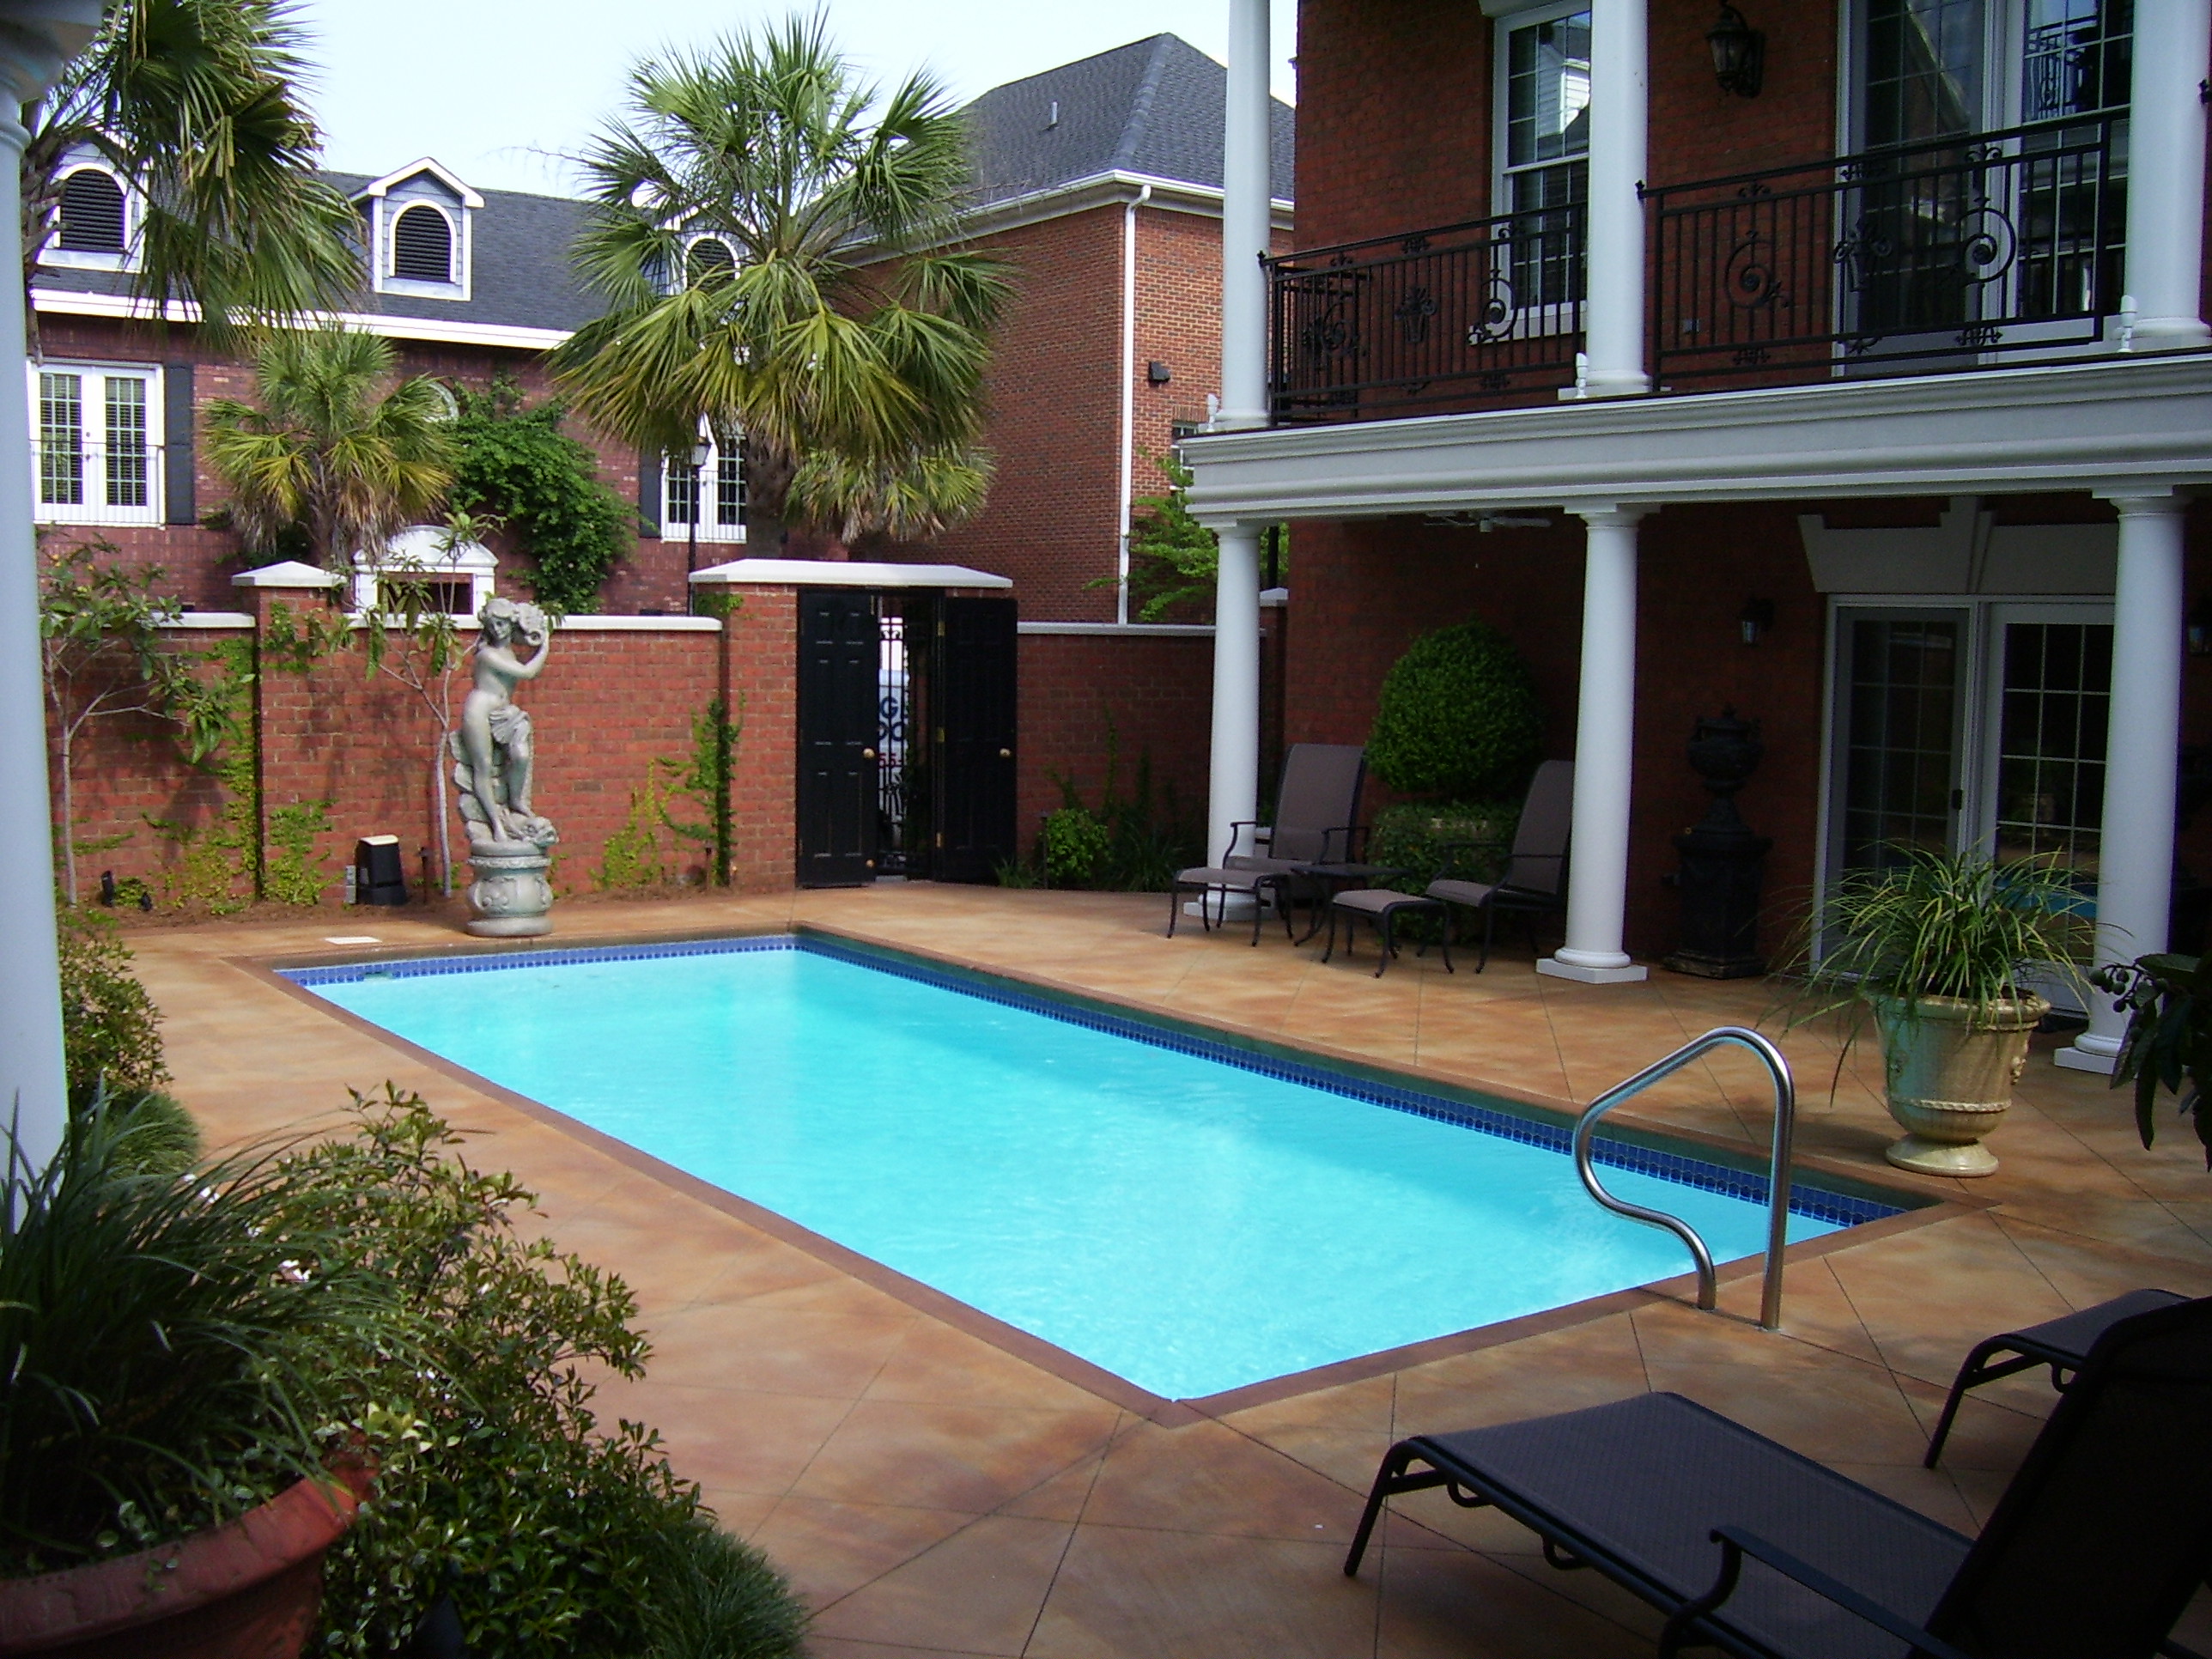 Alaglas Pools of Charleston Photo